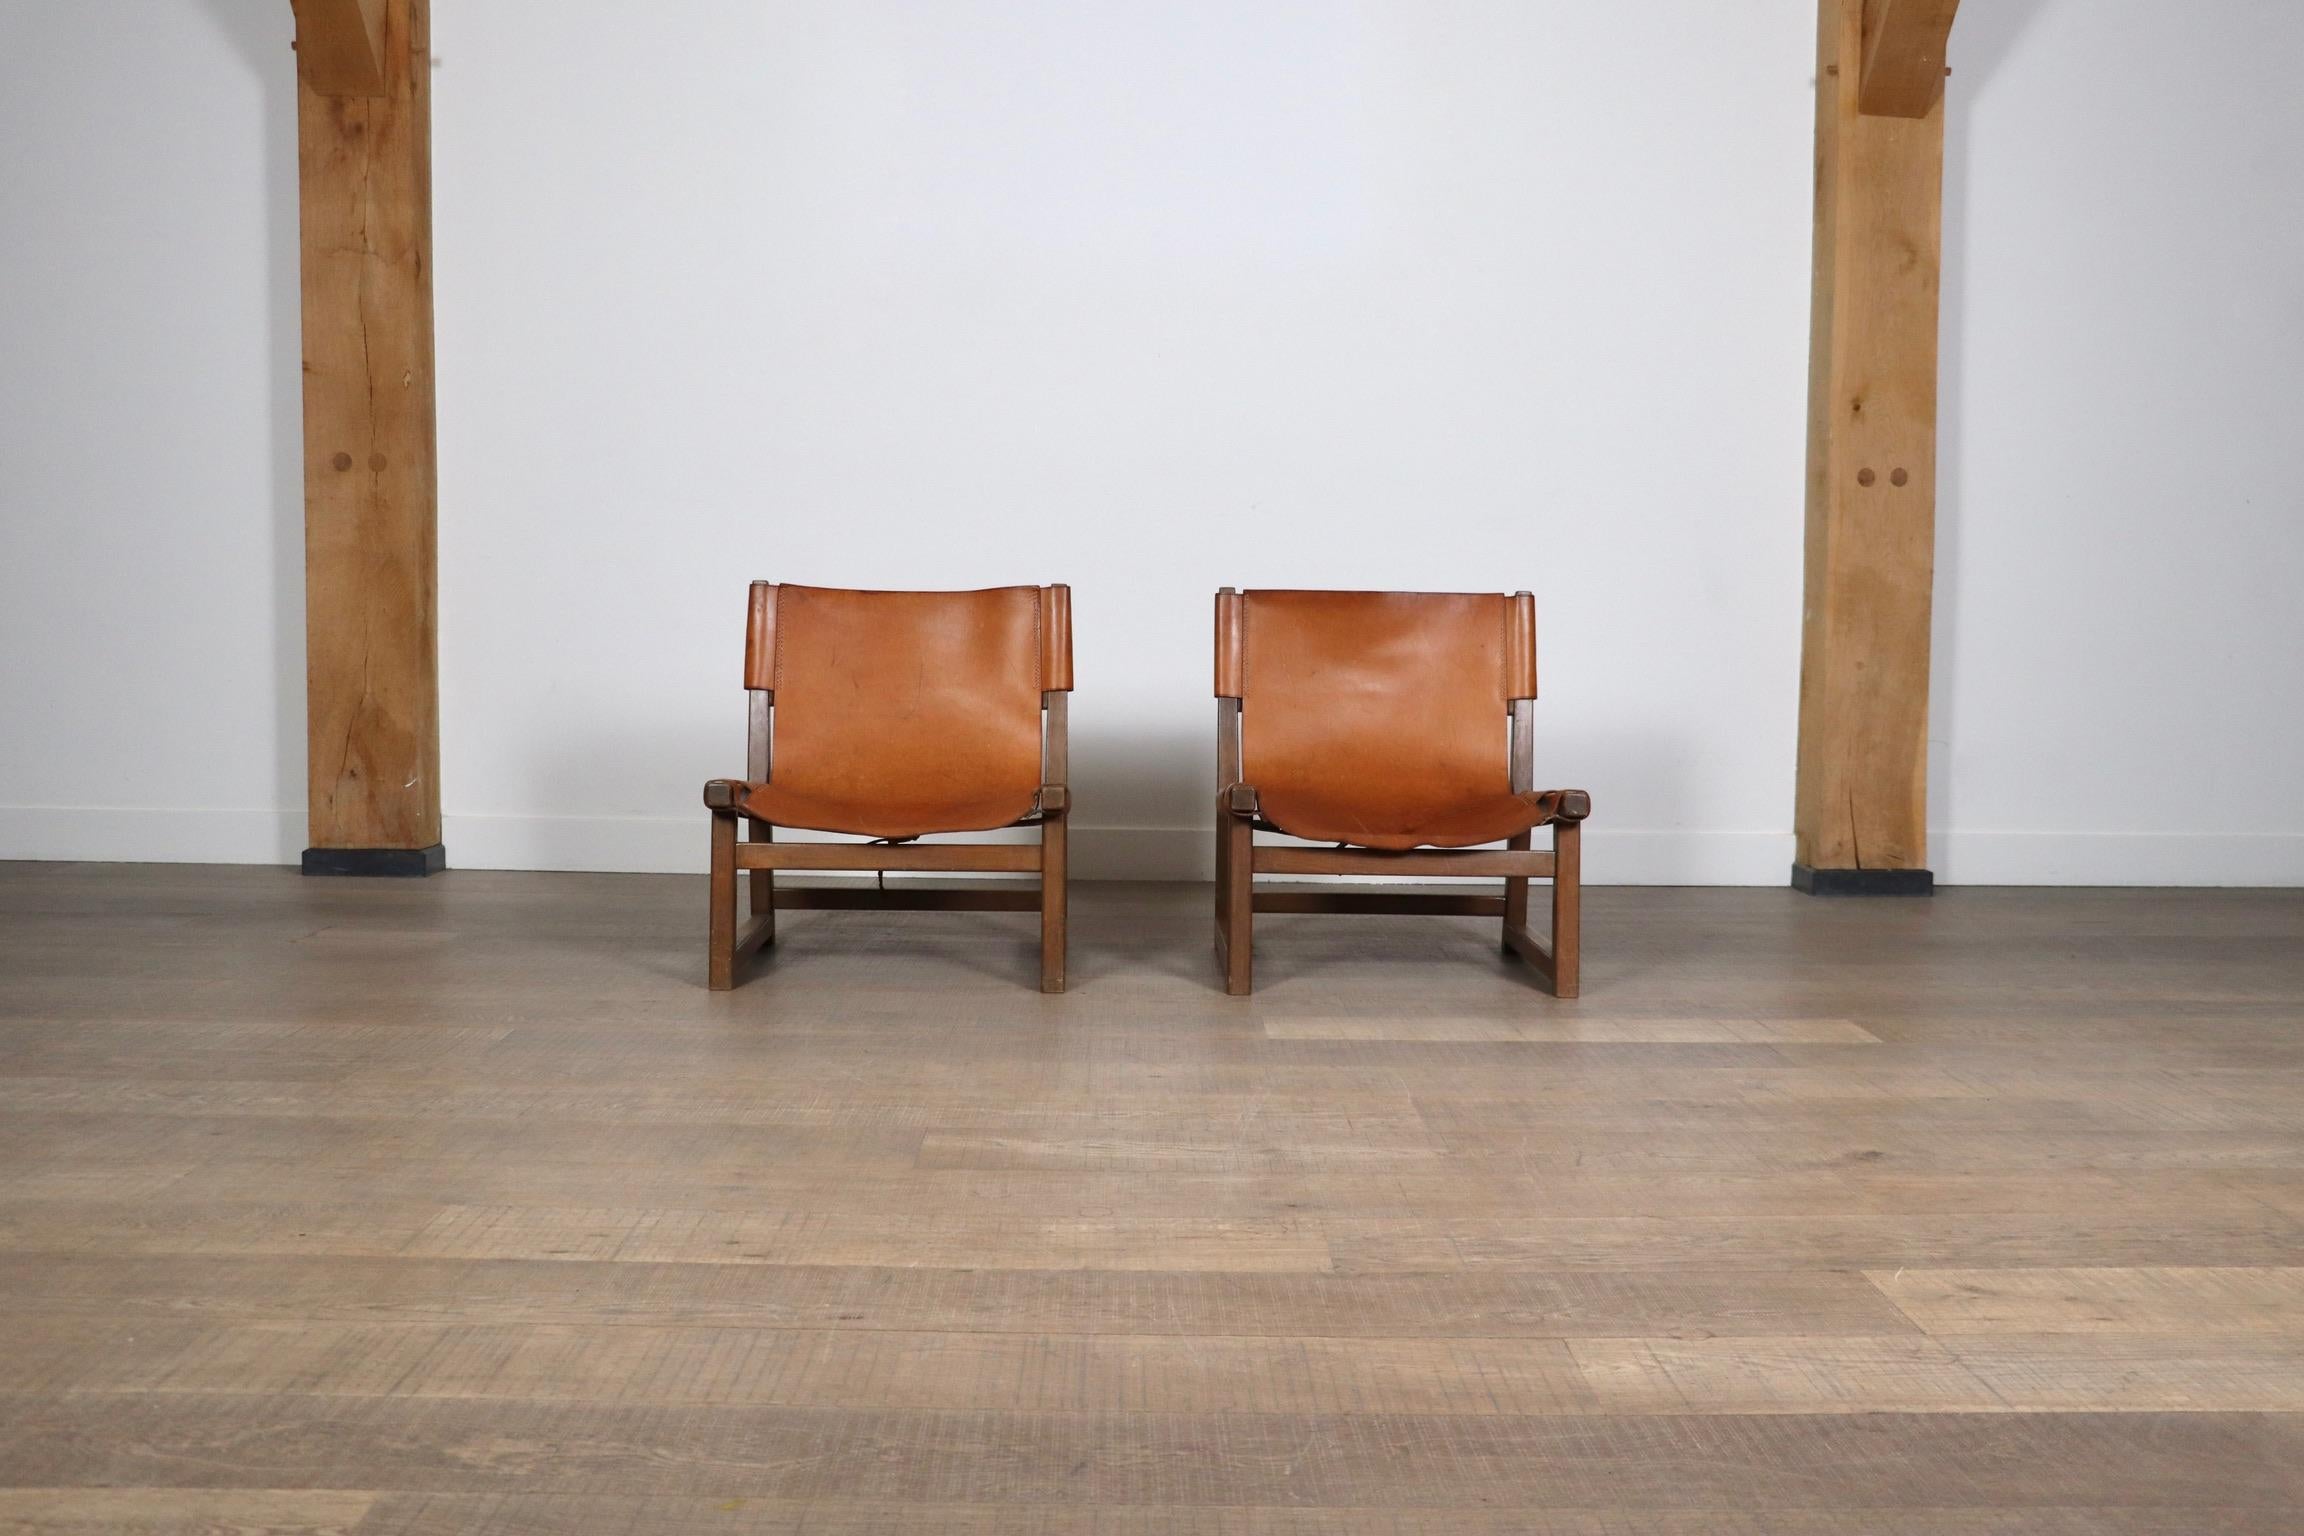 Fantastisches Paar Riaza-Stühle aus cognacfarbenem Leder von Paco Muñoz für Darro Gallery, Spanien, 1960er Jahre.
Die cognacfarbene Lederpolsterung, die mit Riemen lose am Gestell befestigt ist, inspiriert sich an der Ästhetik von Jagdstühlen und